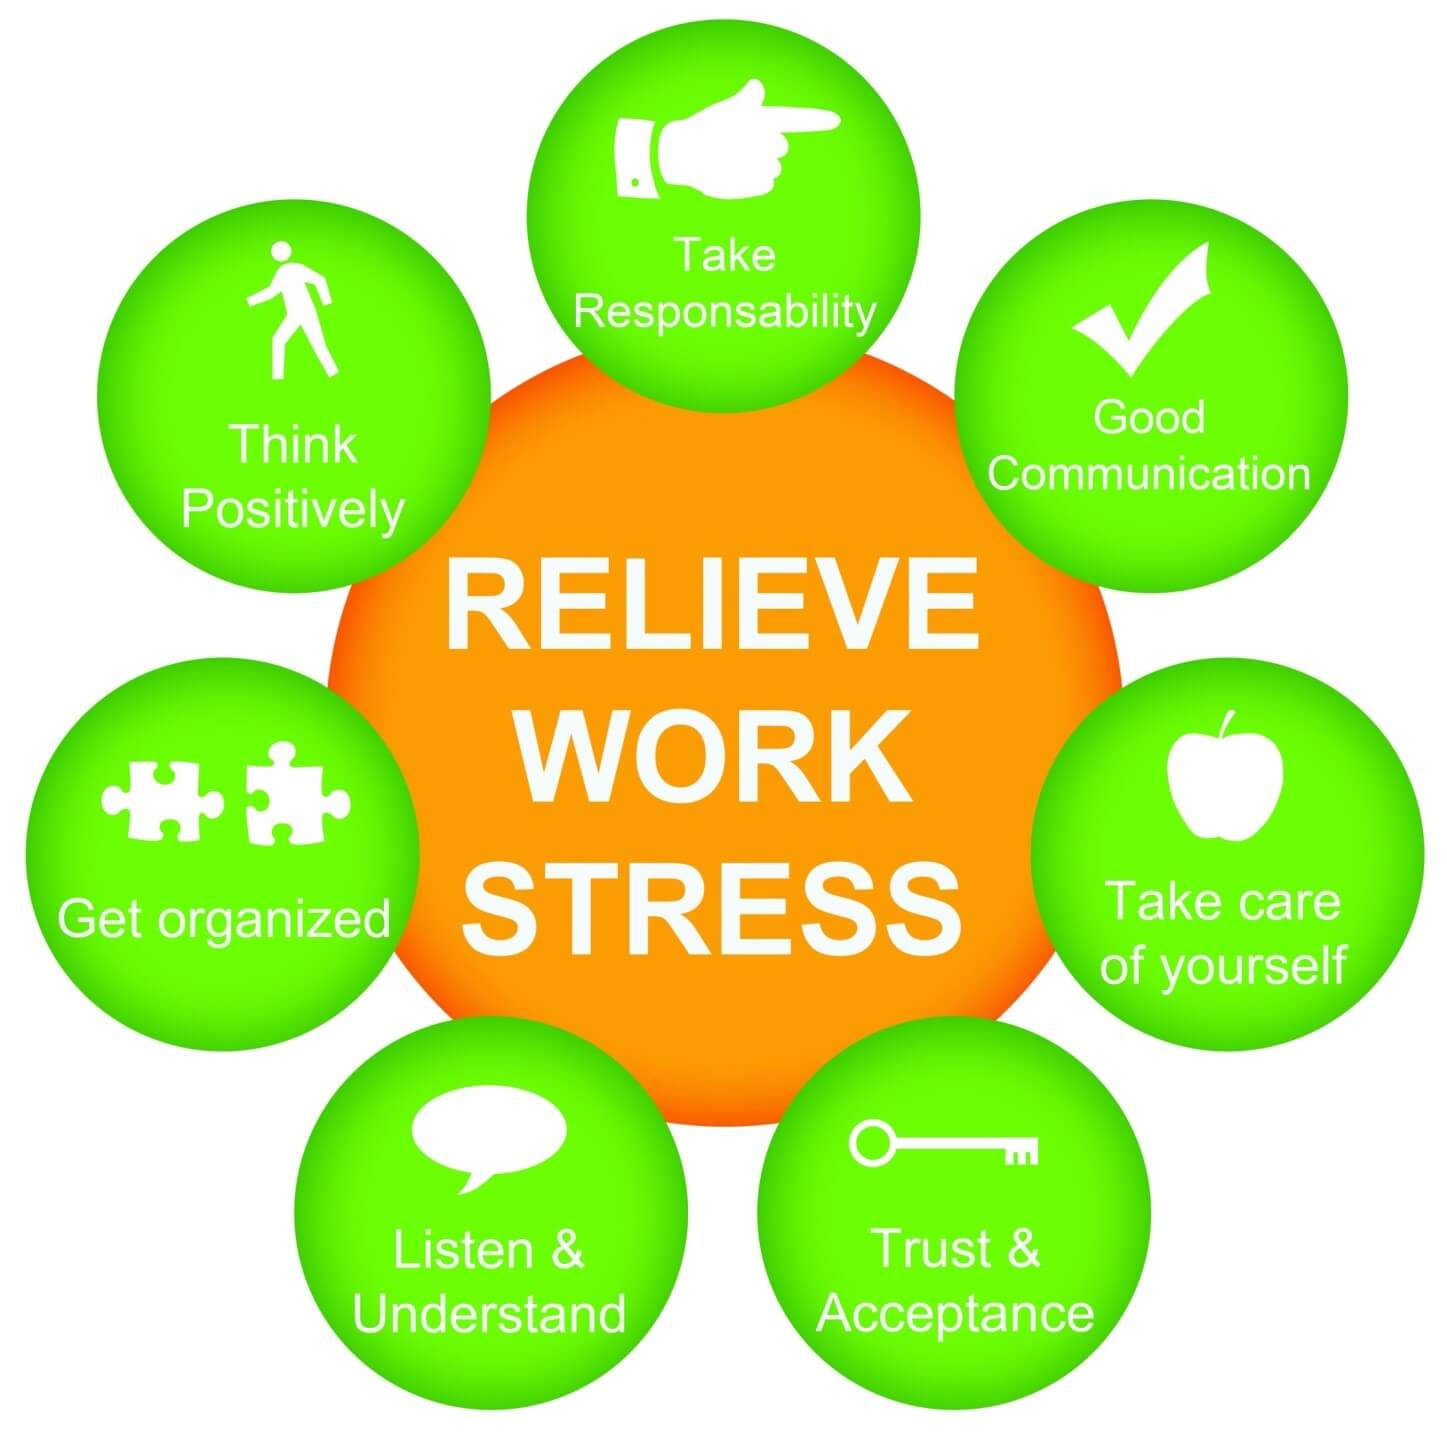 کاهش استرس در محیط کار